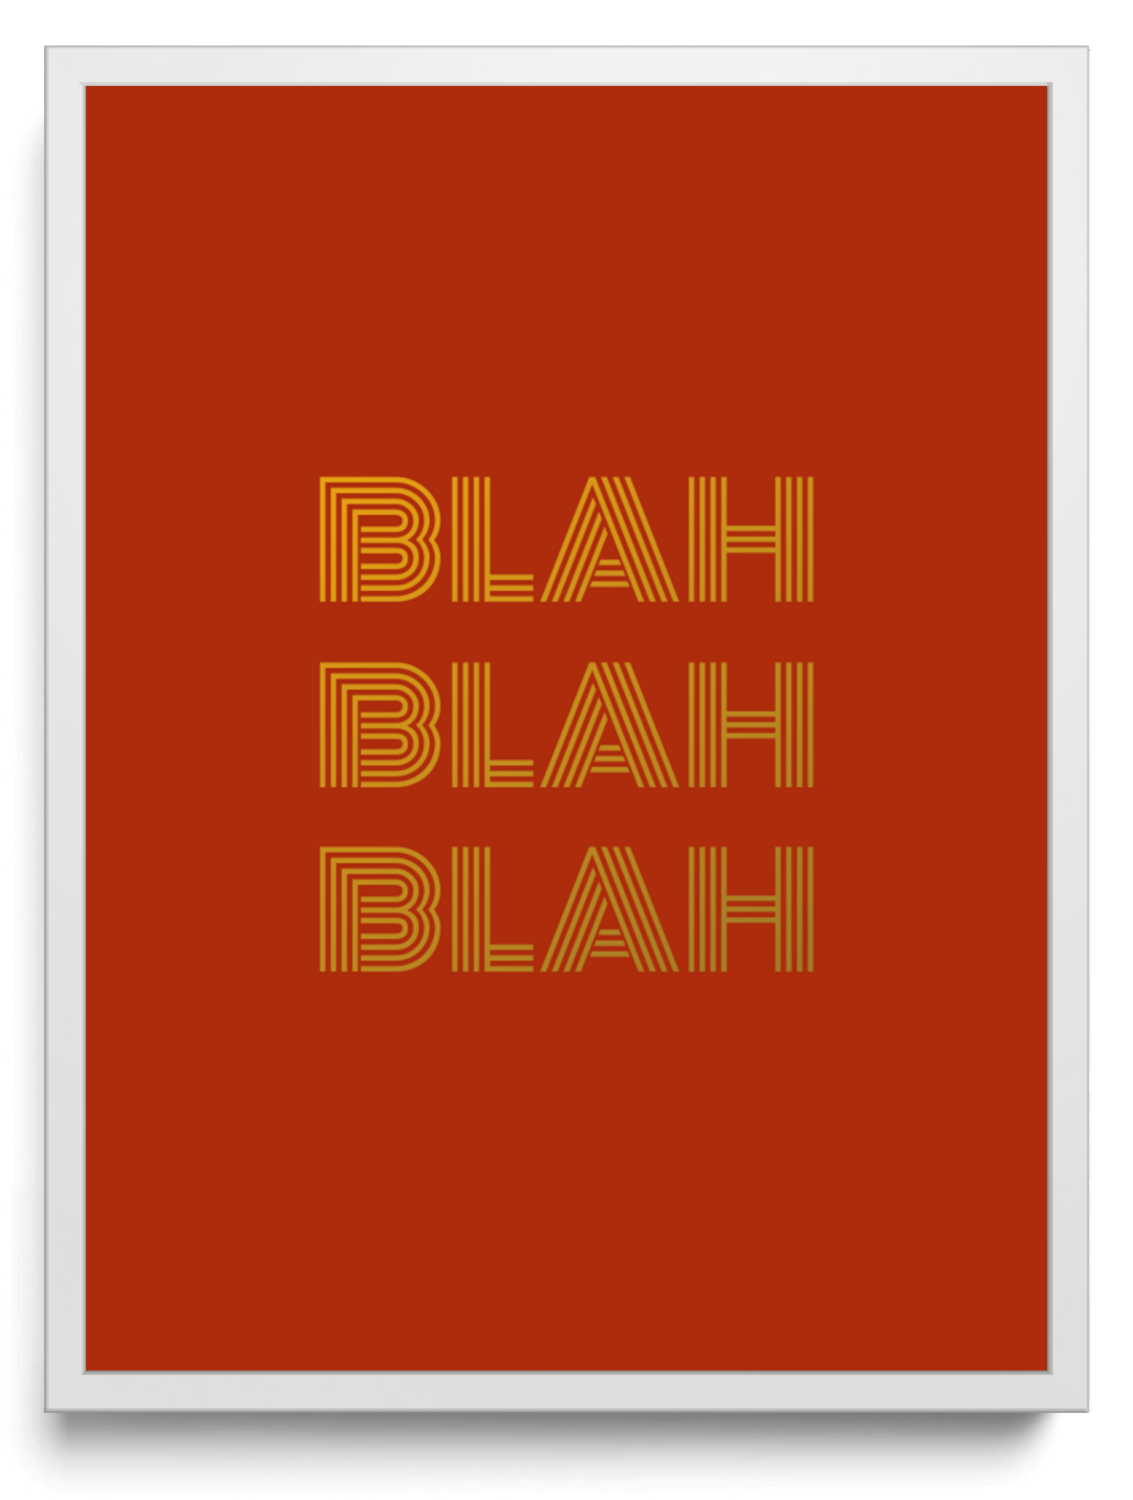 BLAH BLAH BLAH framed typographic print